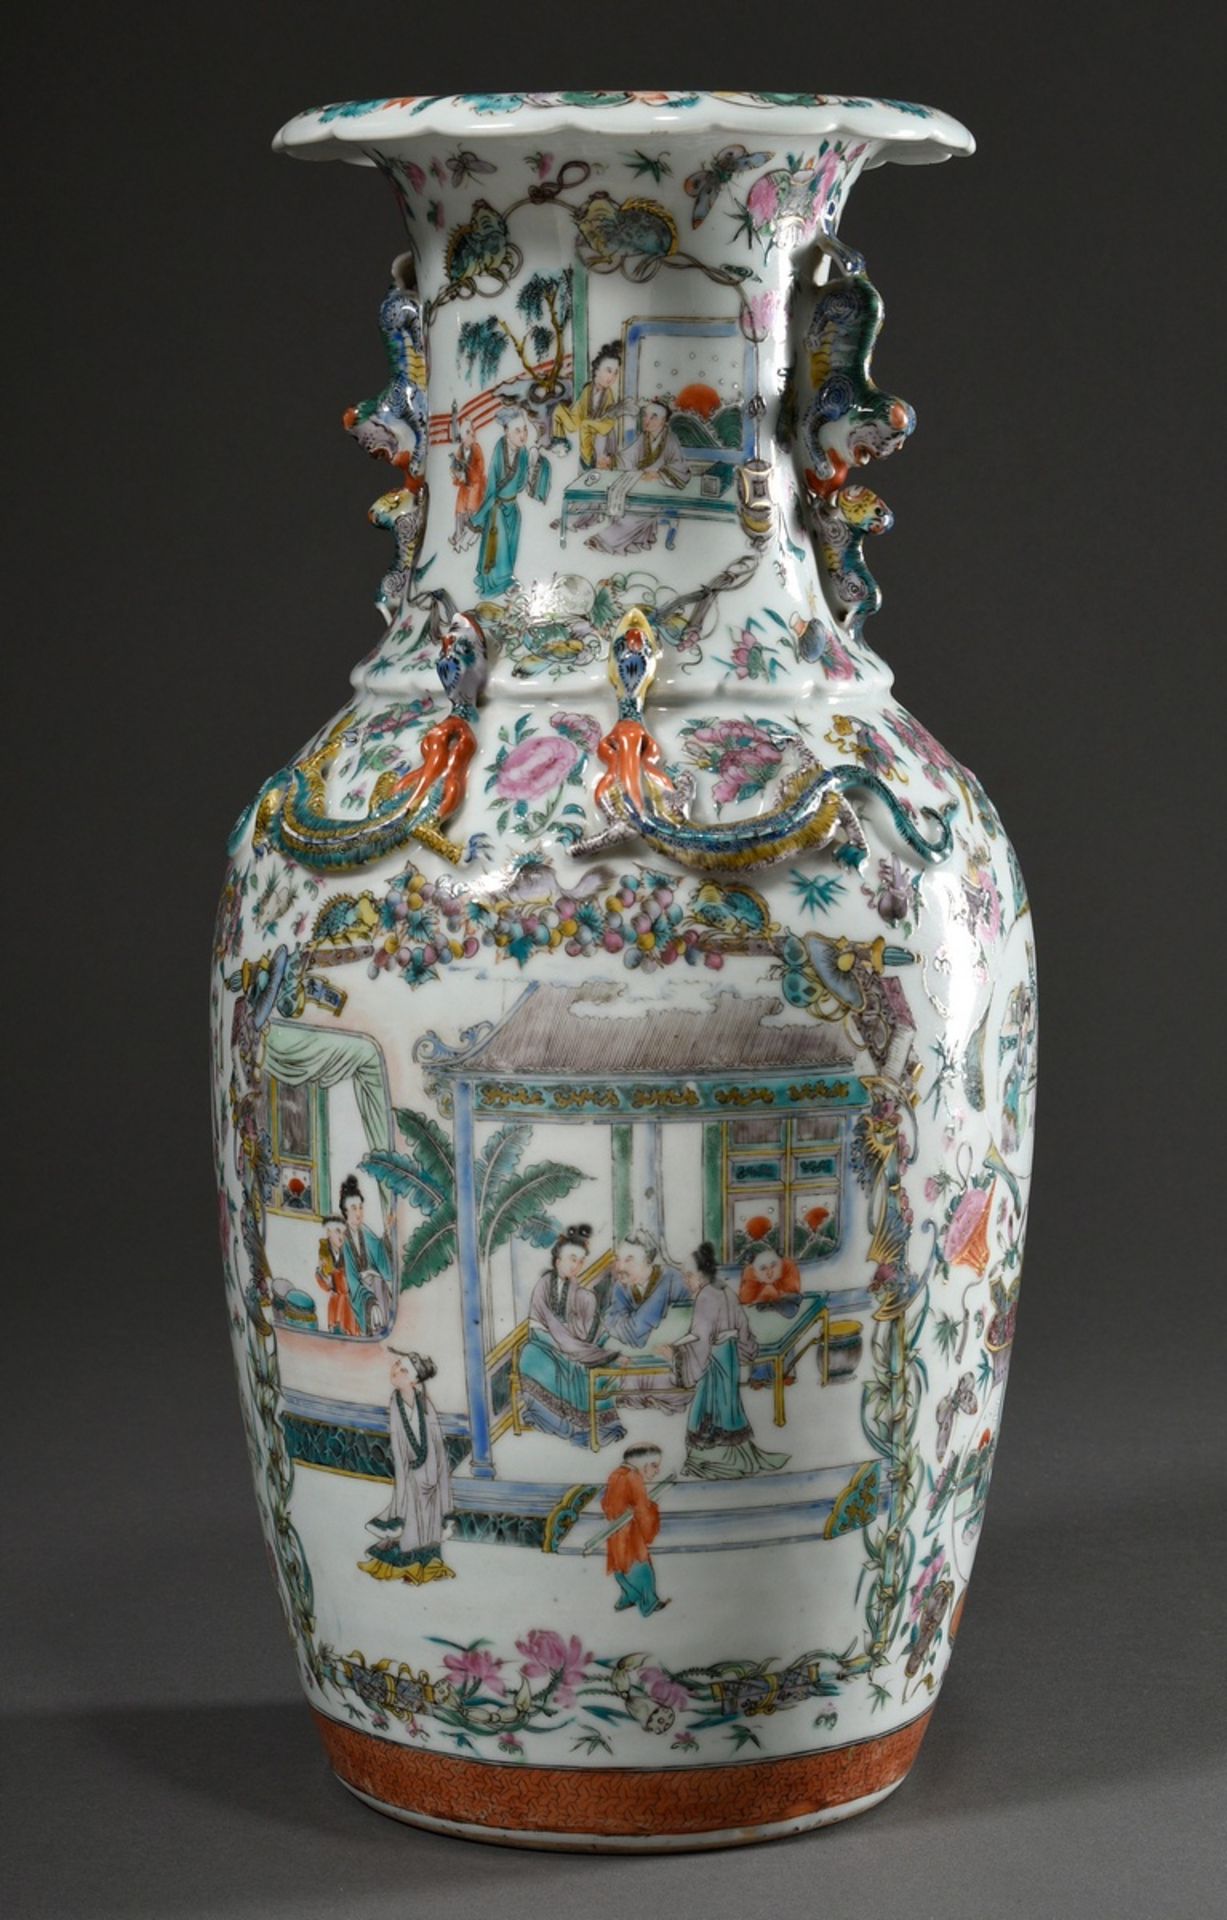 Große Kanton Vase mit lupenfeiner szenischer Malerei in verschiedenen Kartuschen auf floralem Fond  - Bild 2 aus 9